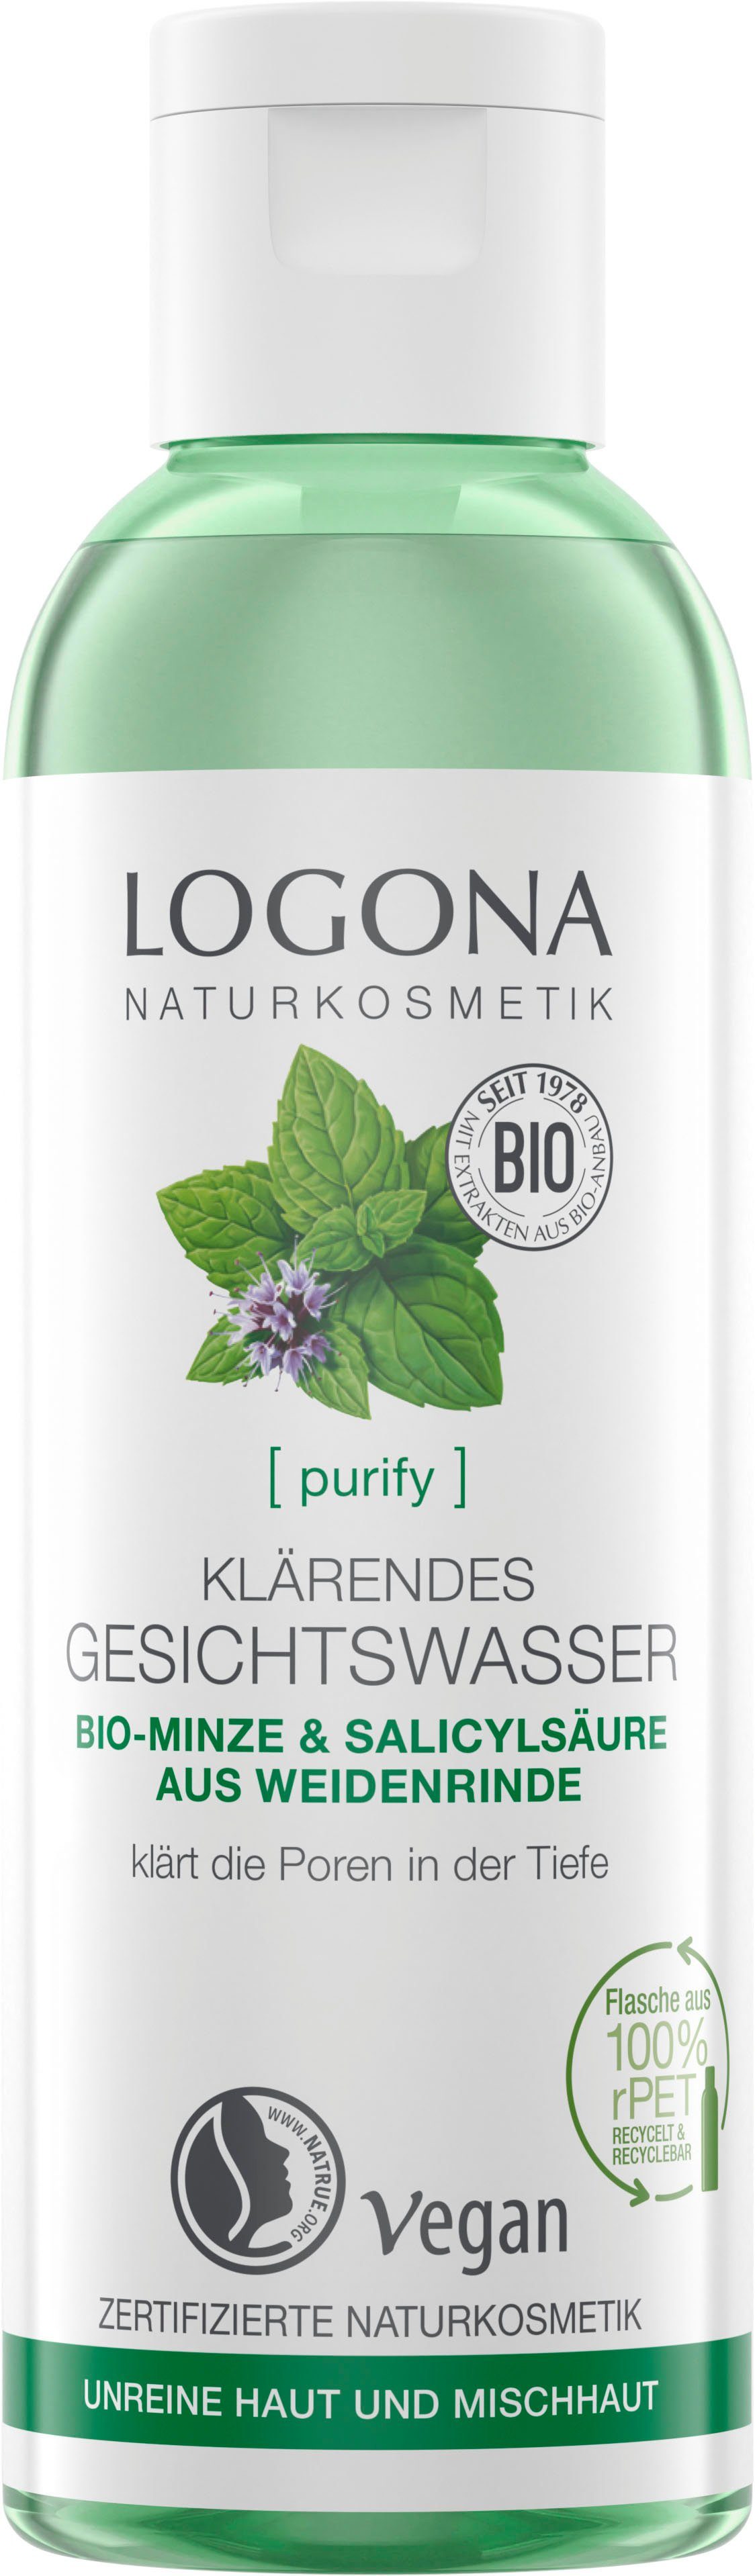 LOGONA Gesichtswasser Logona [purify] Klärendes Gesichtswasser, NaTrue  zertifizierte Naturkosmetik mit veganer Formel